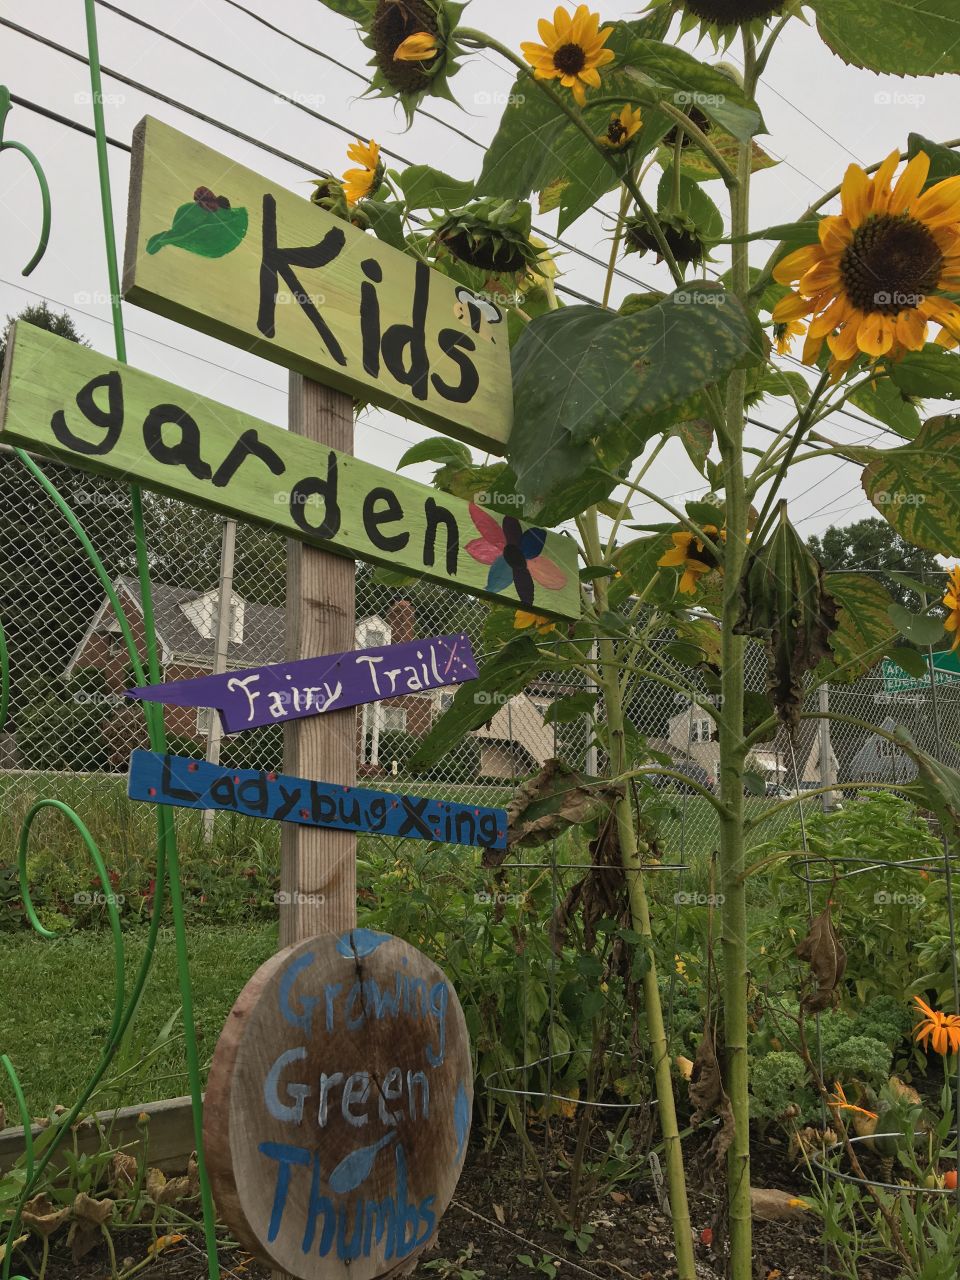 Kids garden